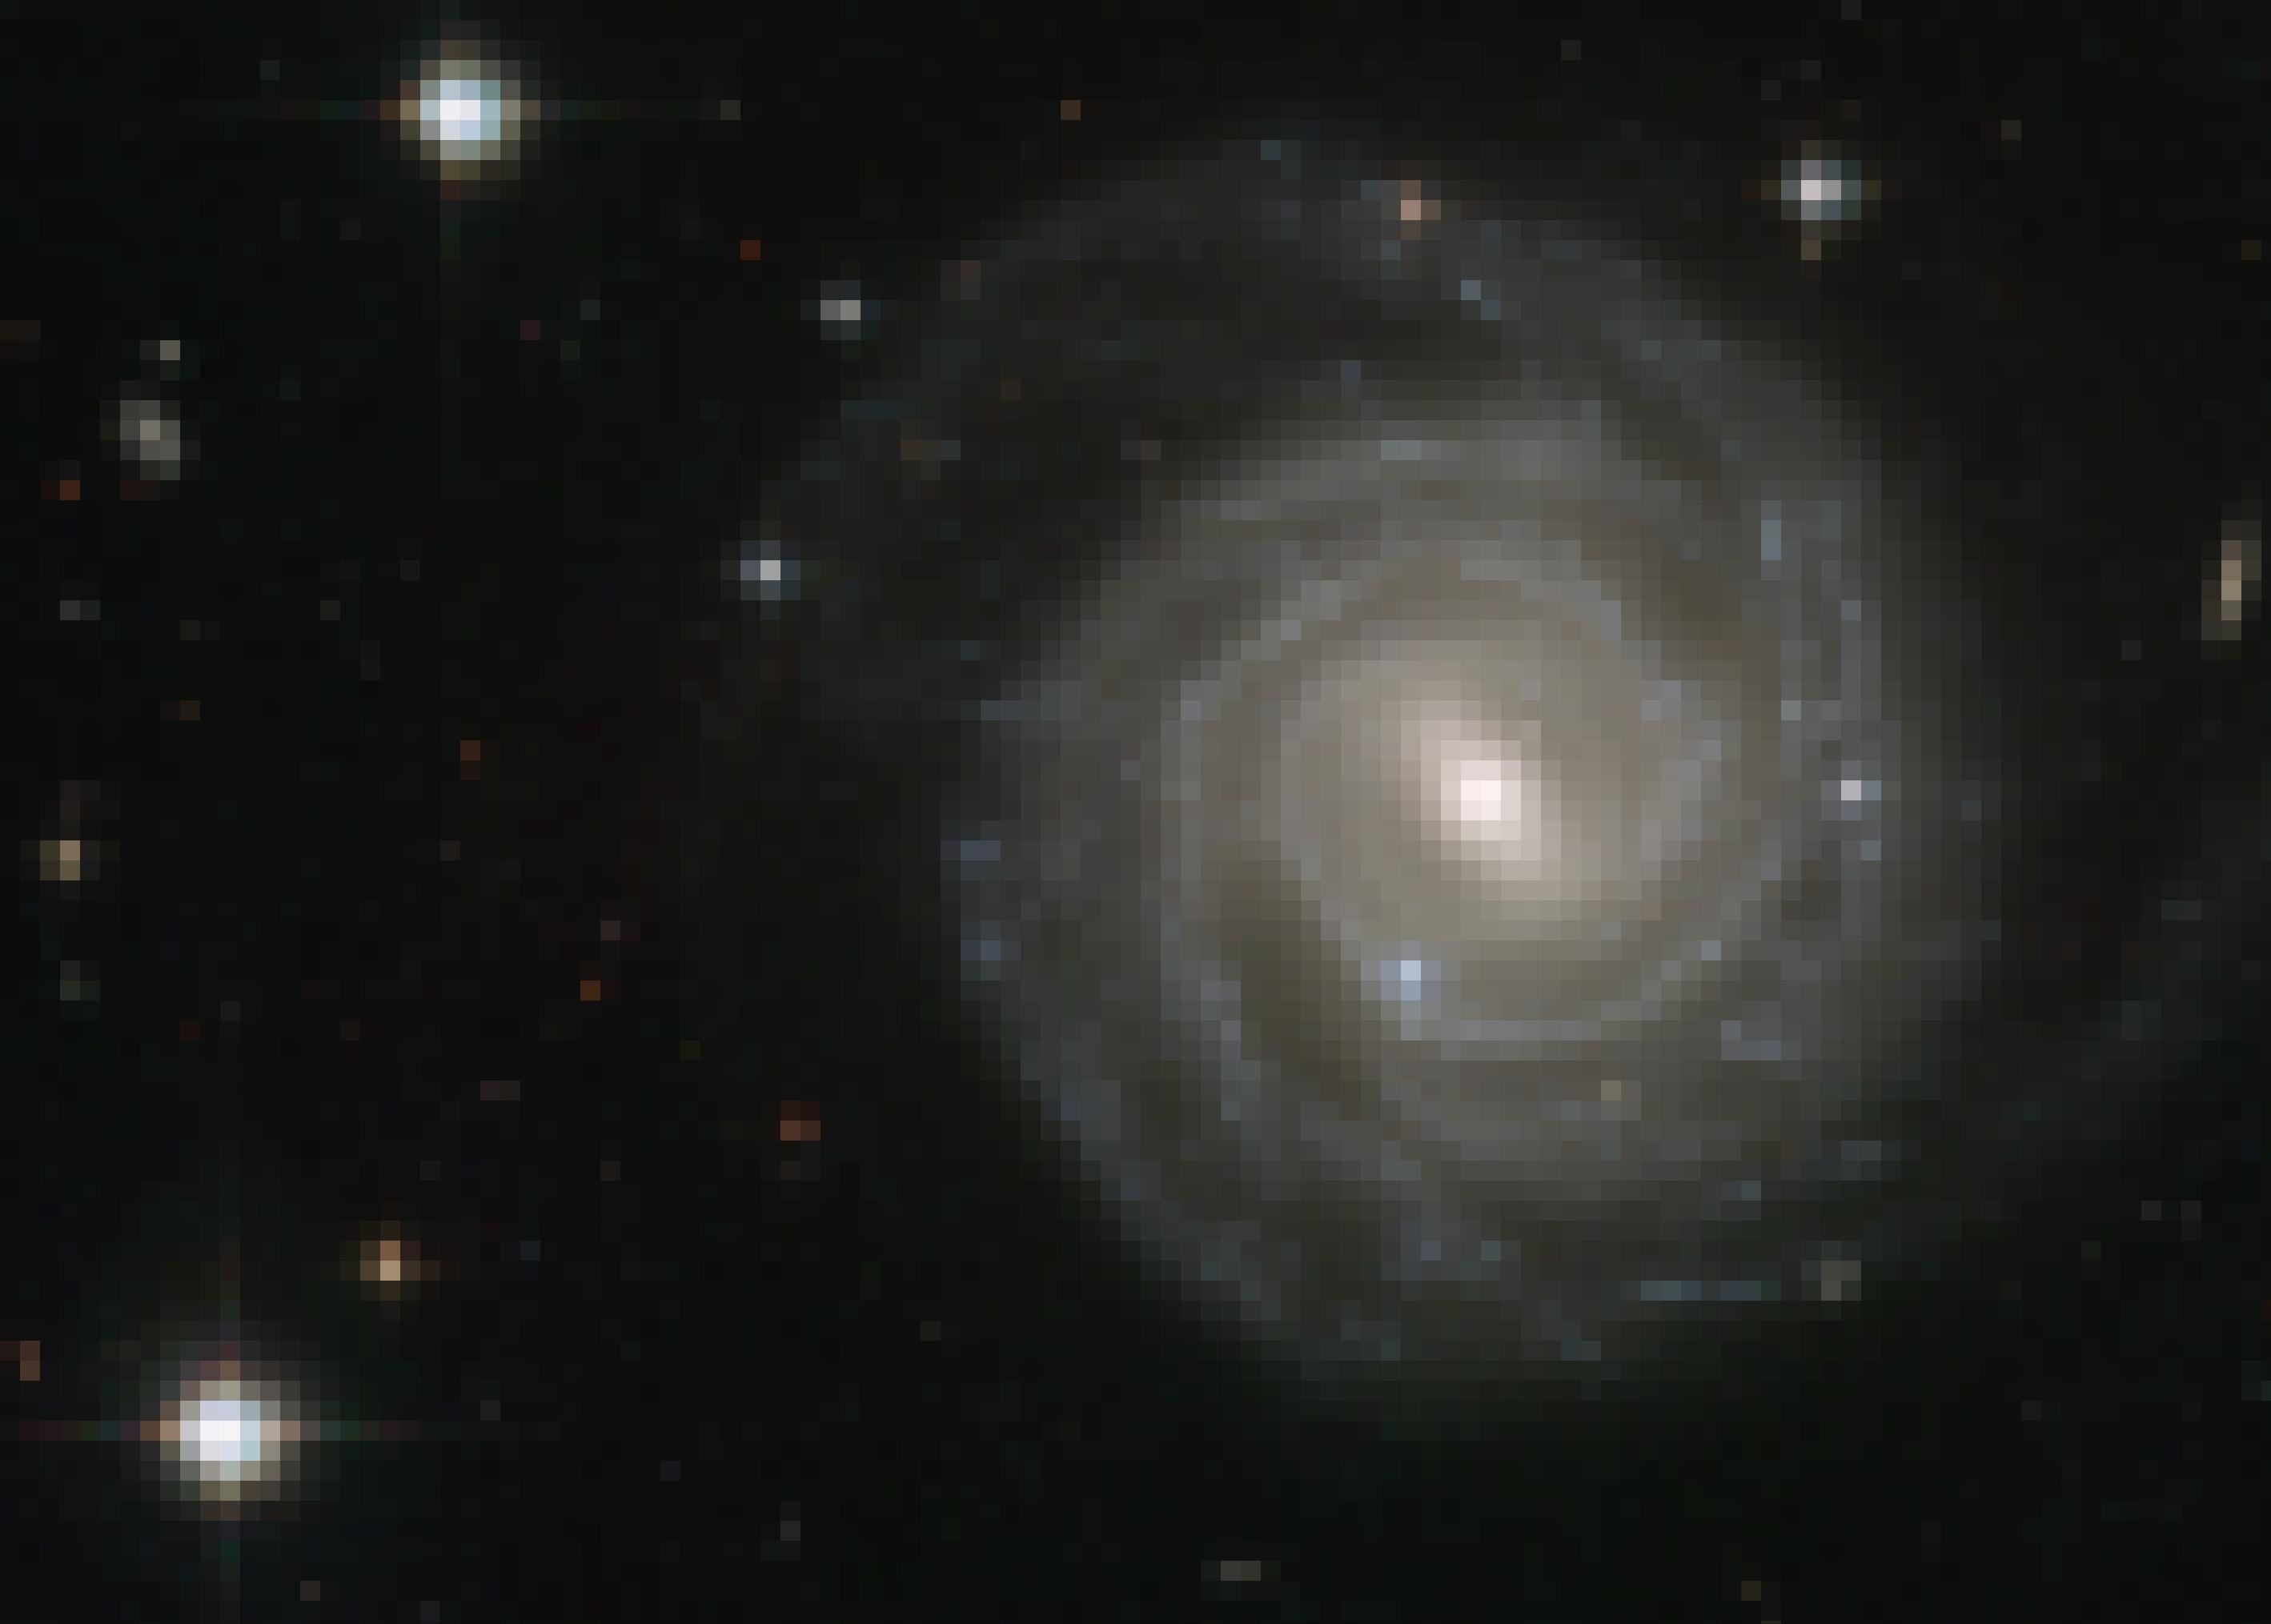 Das Foto zeigt, etwas rechts von der Mitte, die Scheibe einer Spiralgalaxie genau von oben. Die Galaxie wird UGC 12128 genannt und ist im Sternbild Pegasus lokalisiert. Ihr zentraler Bereich, von dem die Spiralarme ausgehen, ist nicht rund, sondern in die Länge gezogen. Deshalb nennen Astronomen diesen Galaxientyp Balkenspirale. Zwei Drittel aller Spiralgalaxien gehören zum Typ Balkenspirale – auch unsere Milchstraße. Einige Wissenschaftler glauben, dass sich Balkenspiralen zu regulären Galaxien entwickeln können. Das Foto wurde vom Hubble-Weltraumteleskop aufgenommen.